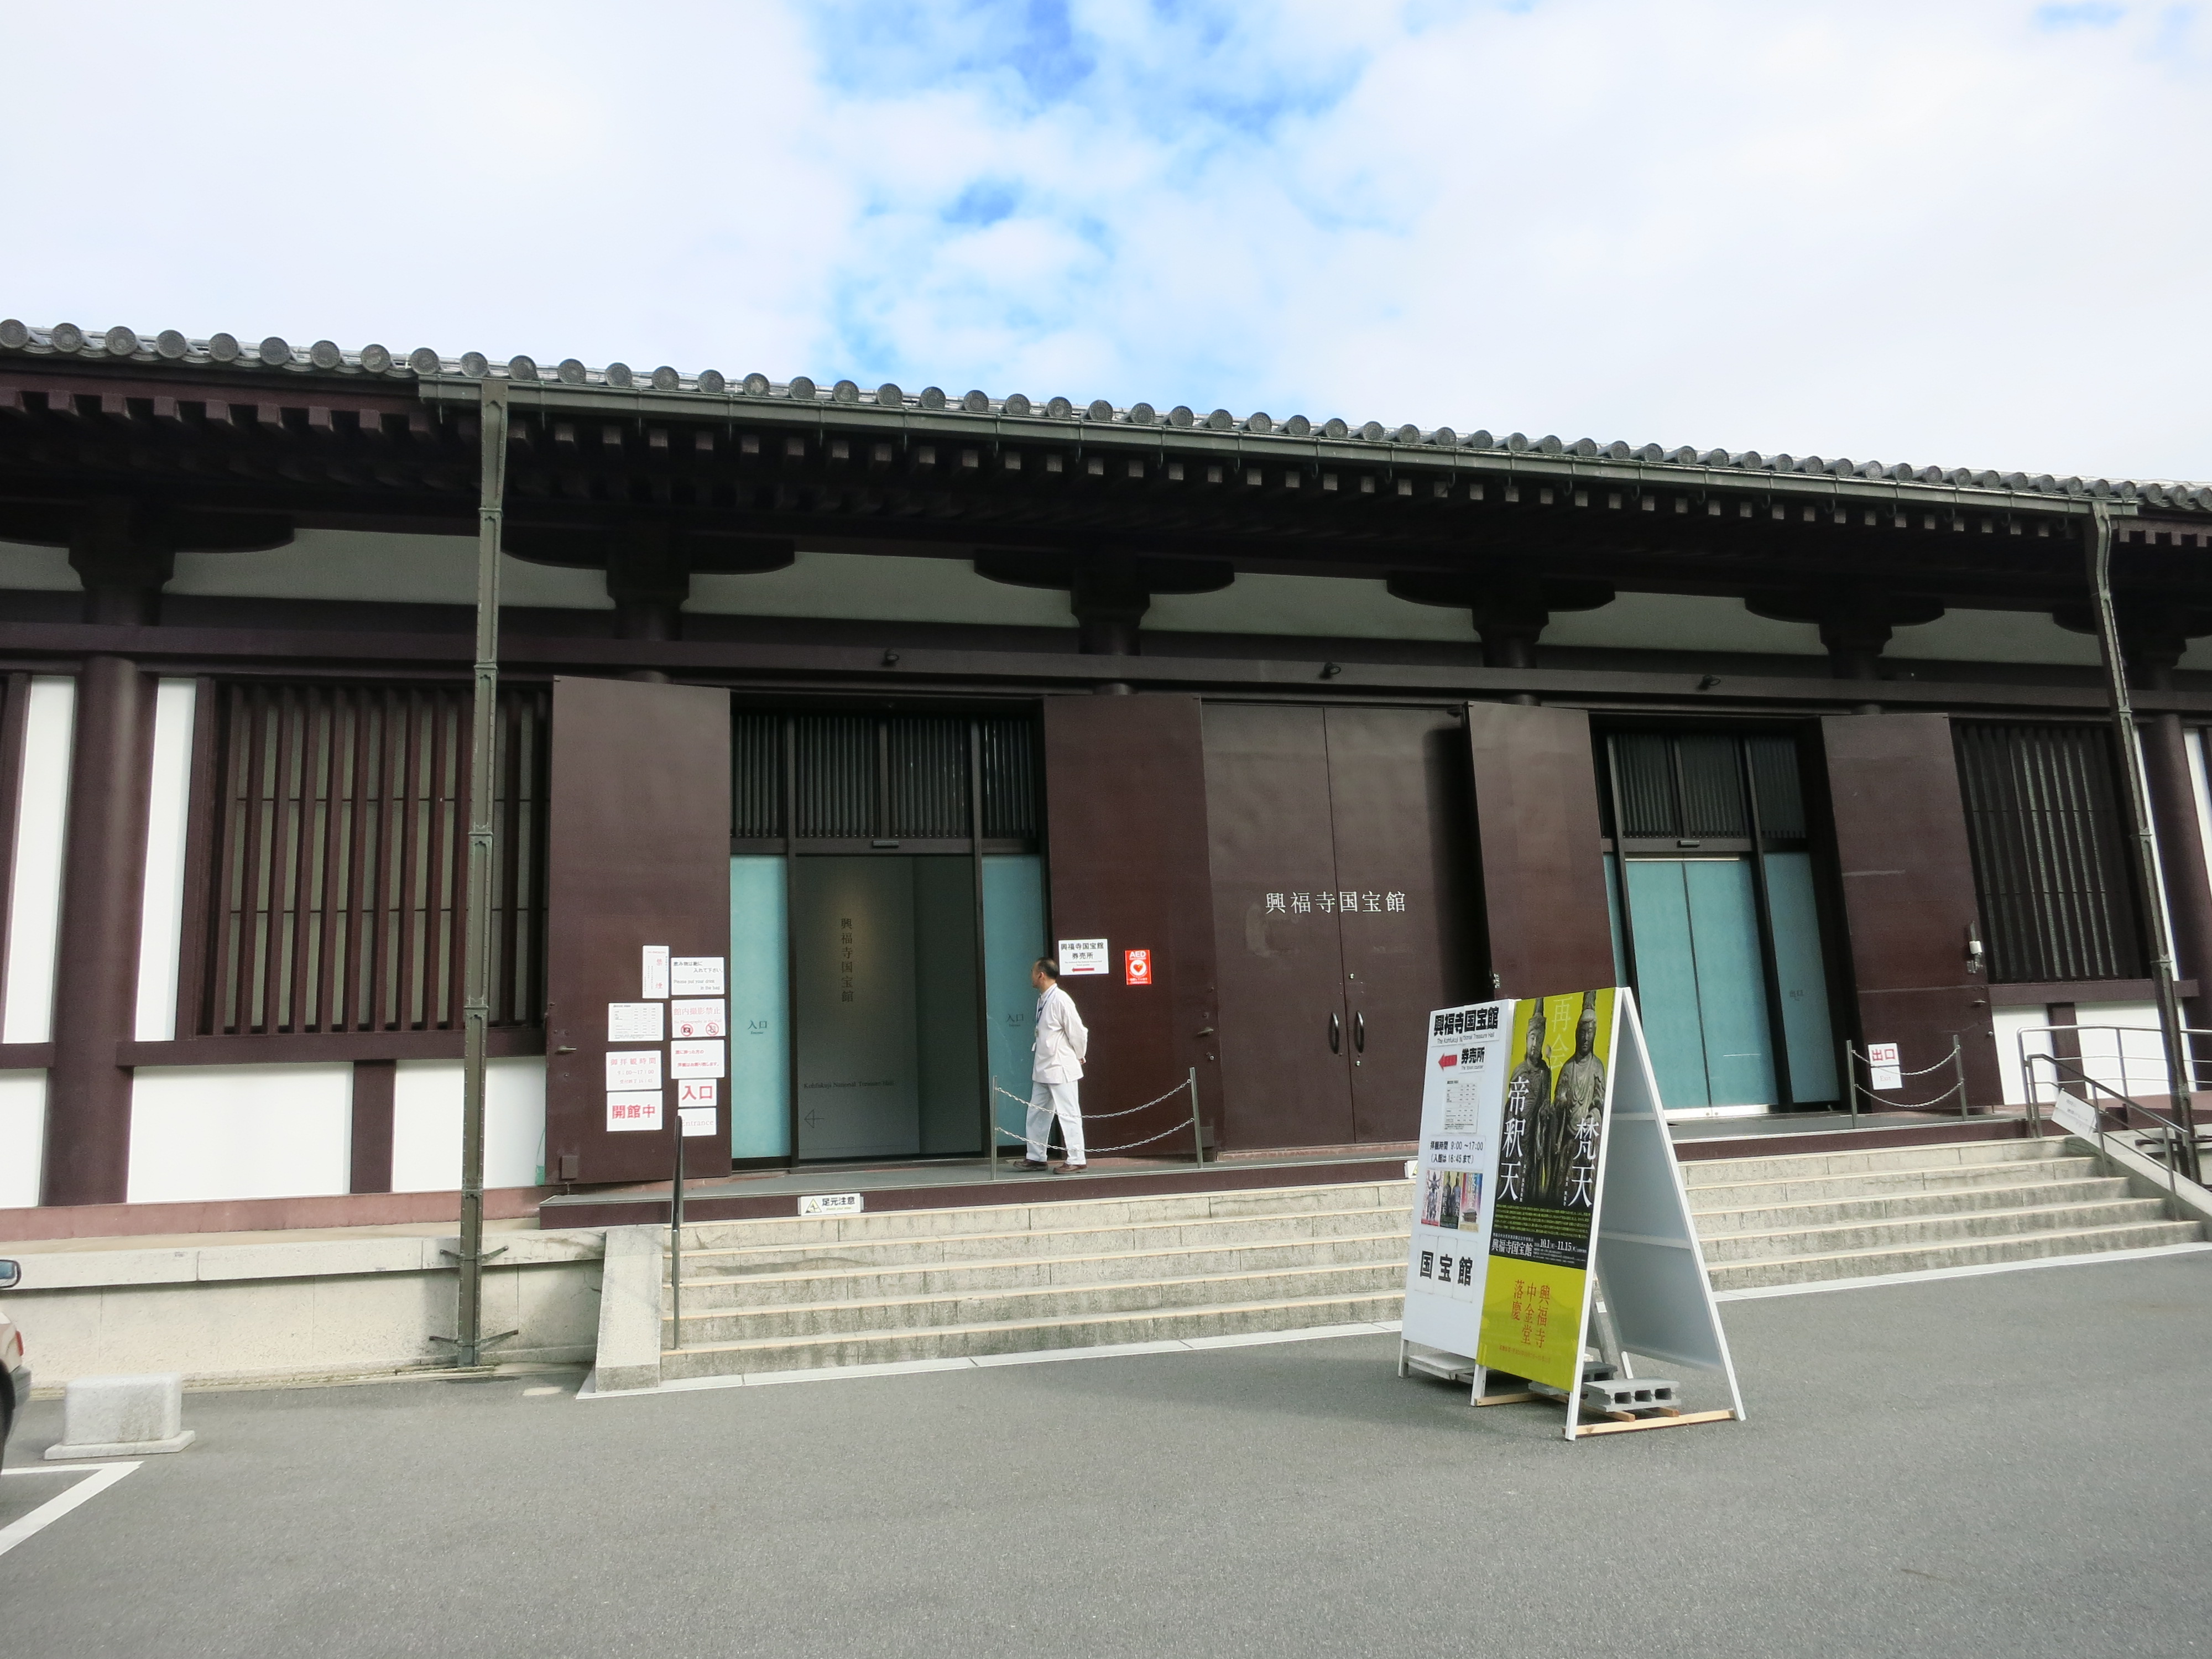 興福寺国宝館の前を通って、奈良国立博物館へ向かいました。